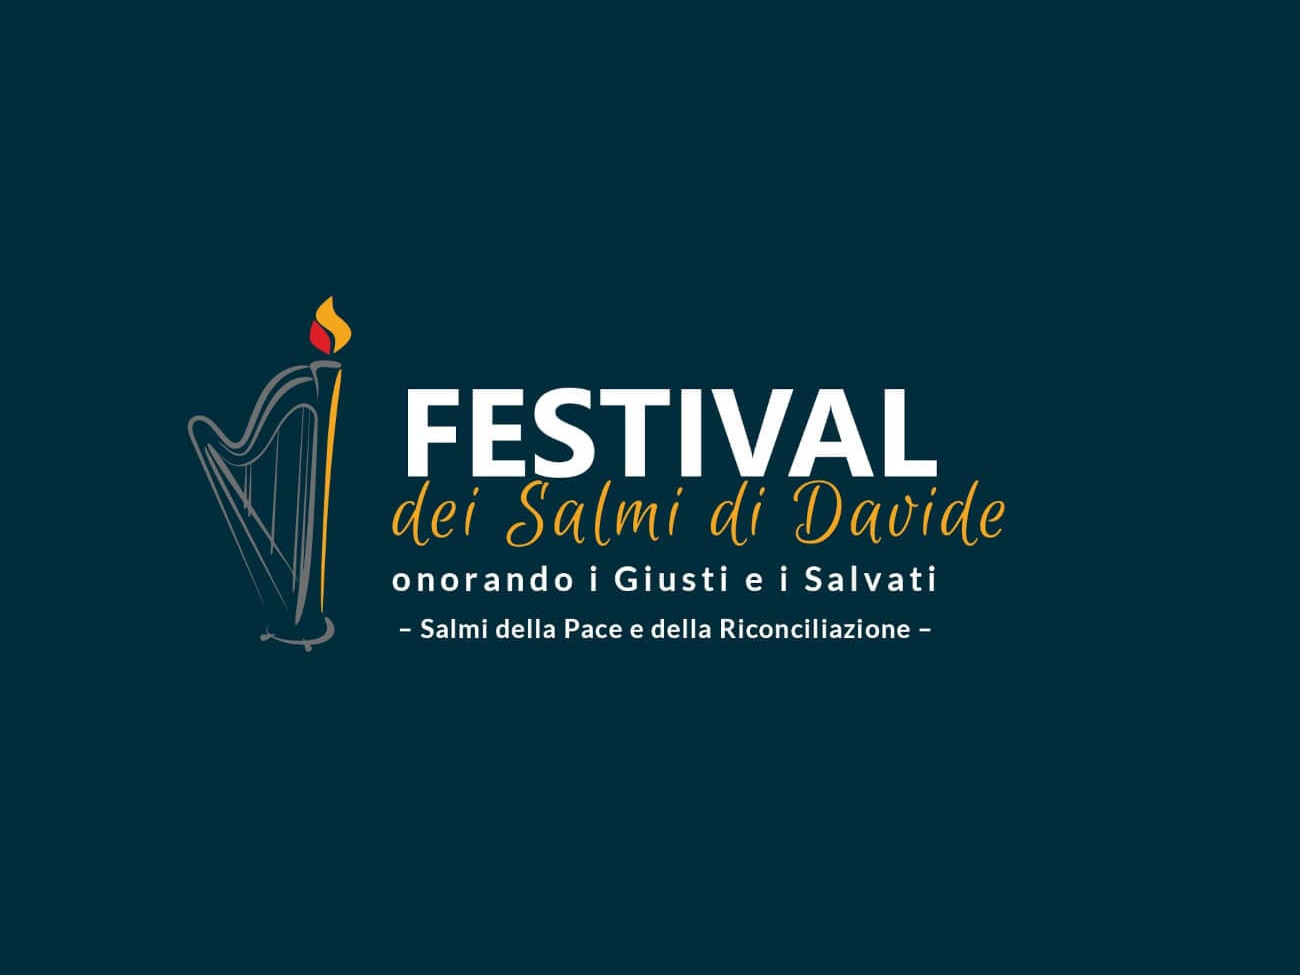 Festival Famiglia ULMA SOAR 2021 - "Festival dei Salmi di Davide"